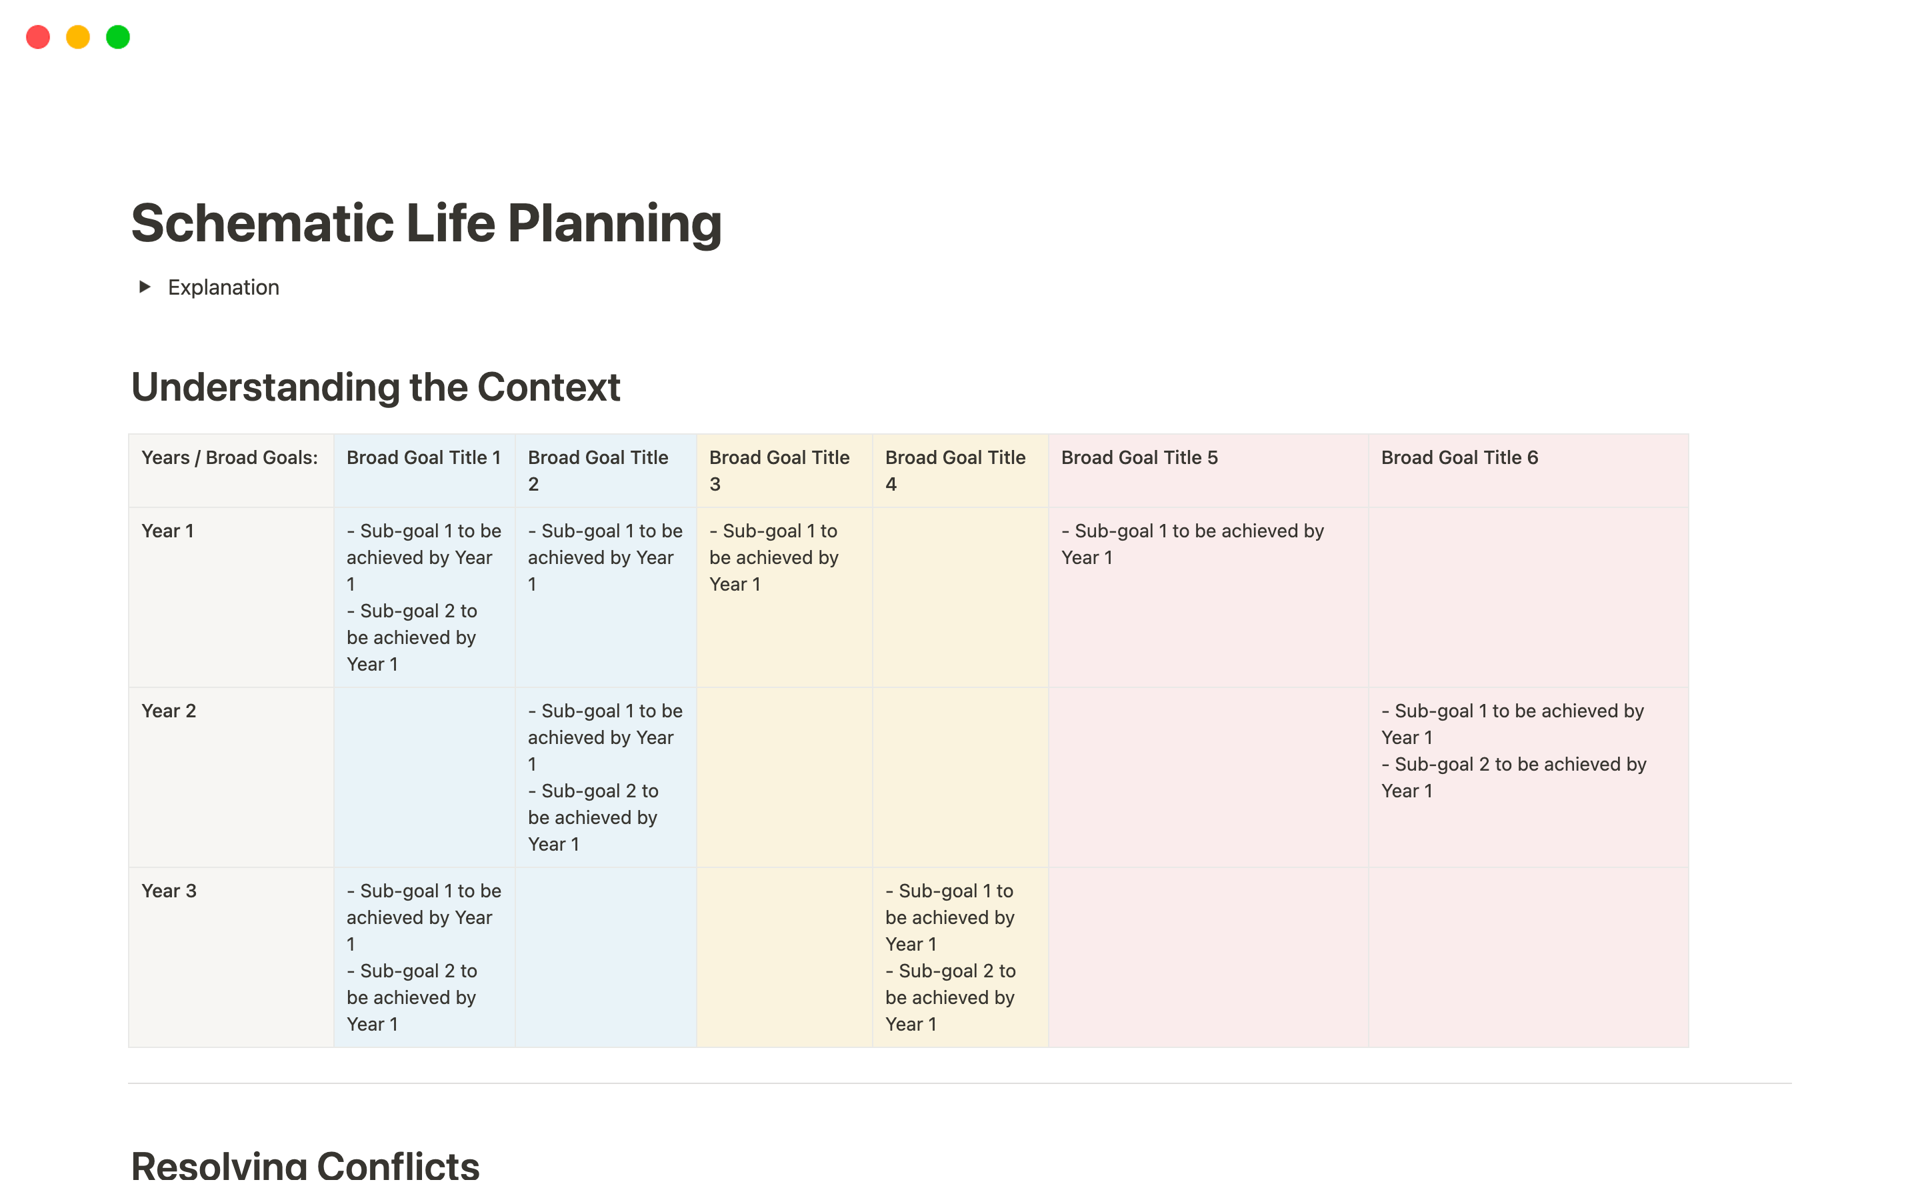 Uma prévia do modelo para Schematic Life Planning